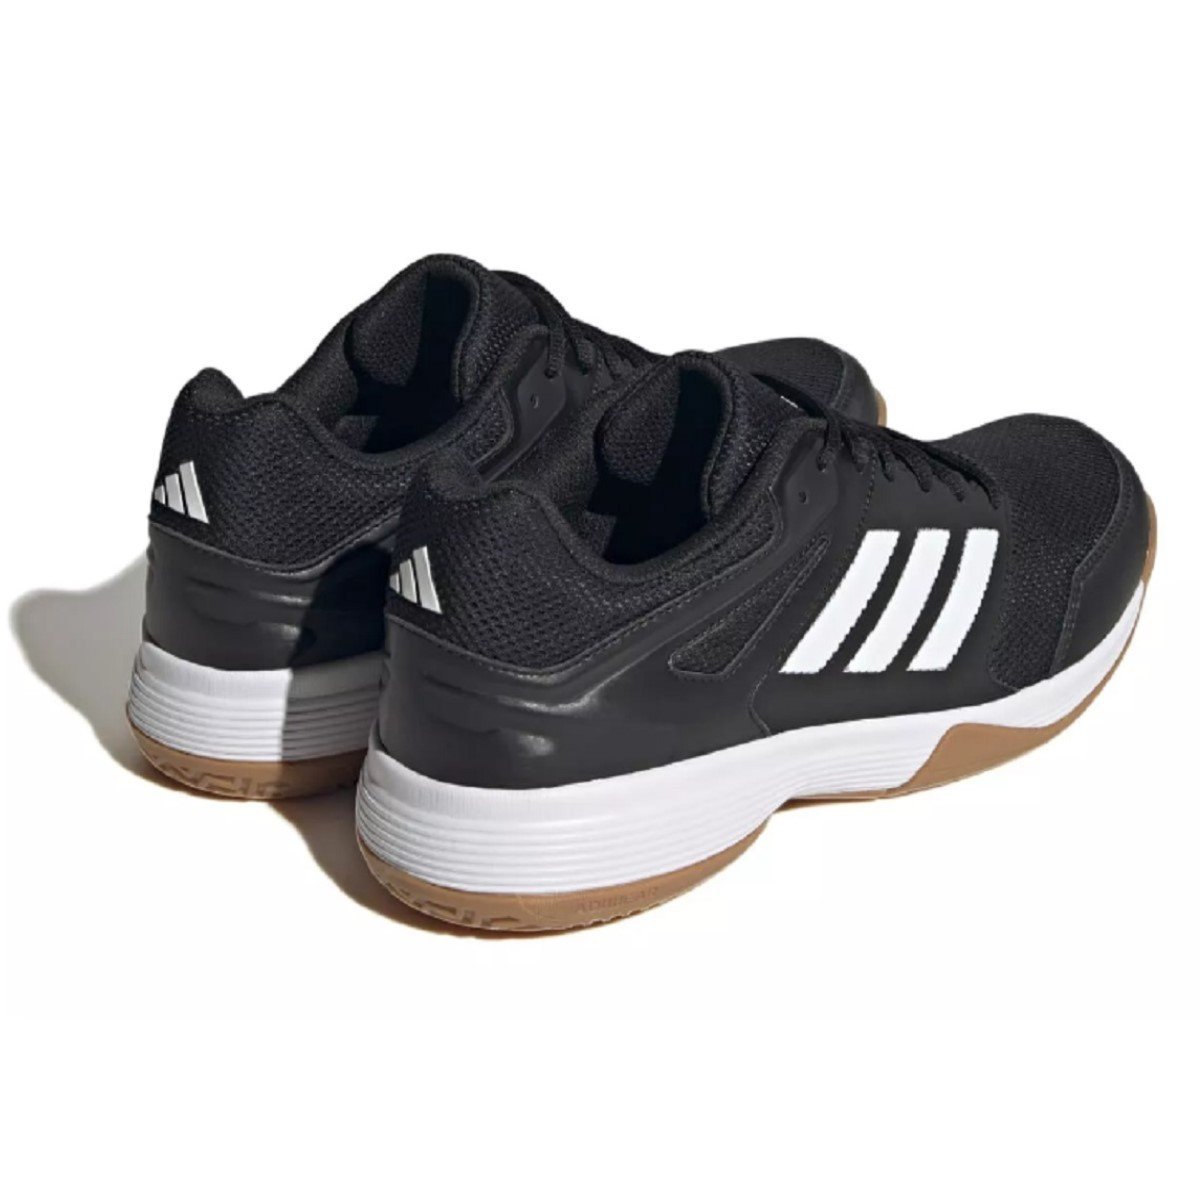 Obuv Adidas Speedcourt M - čierna/biela